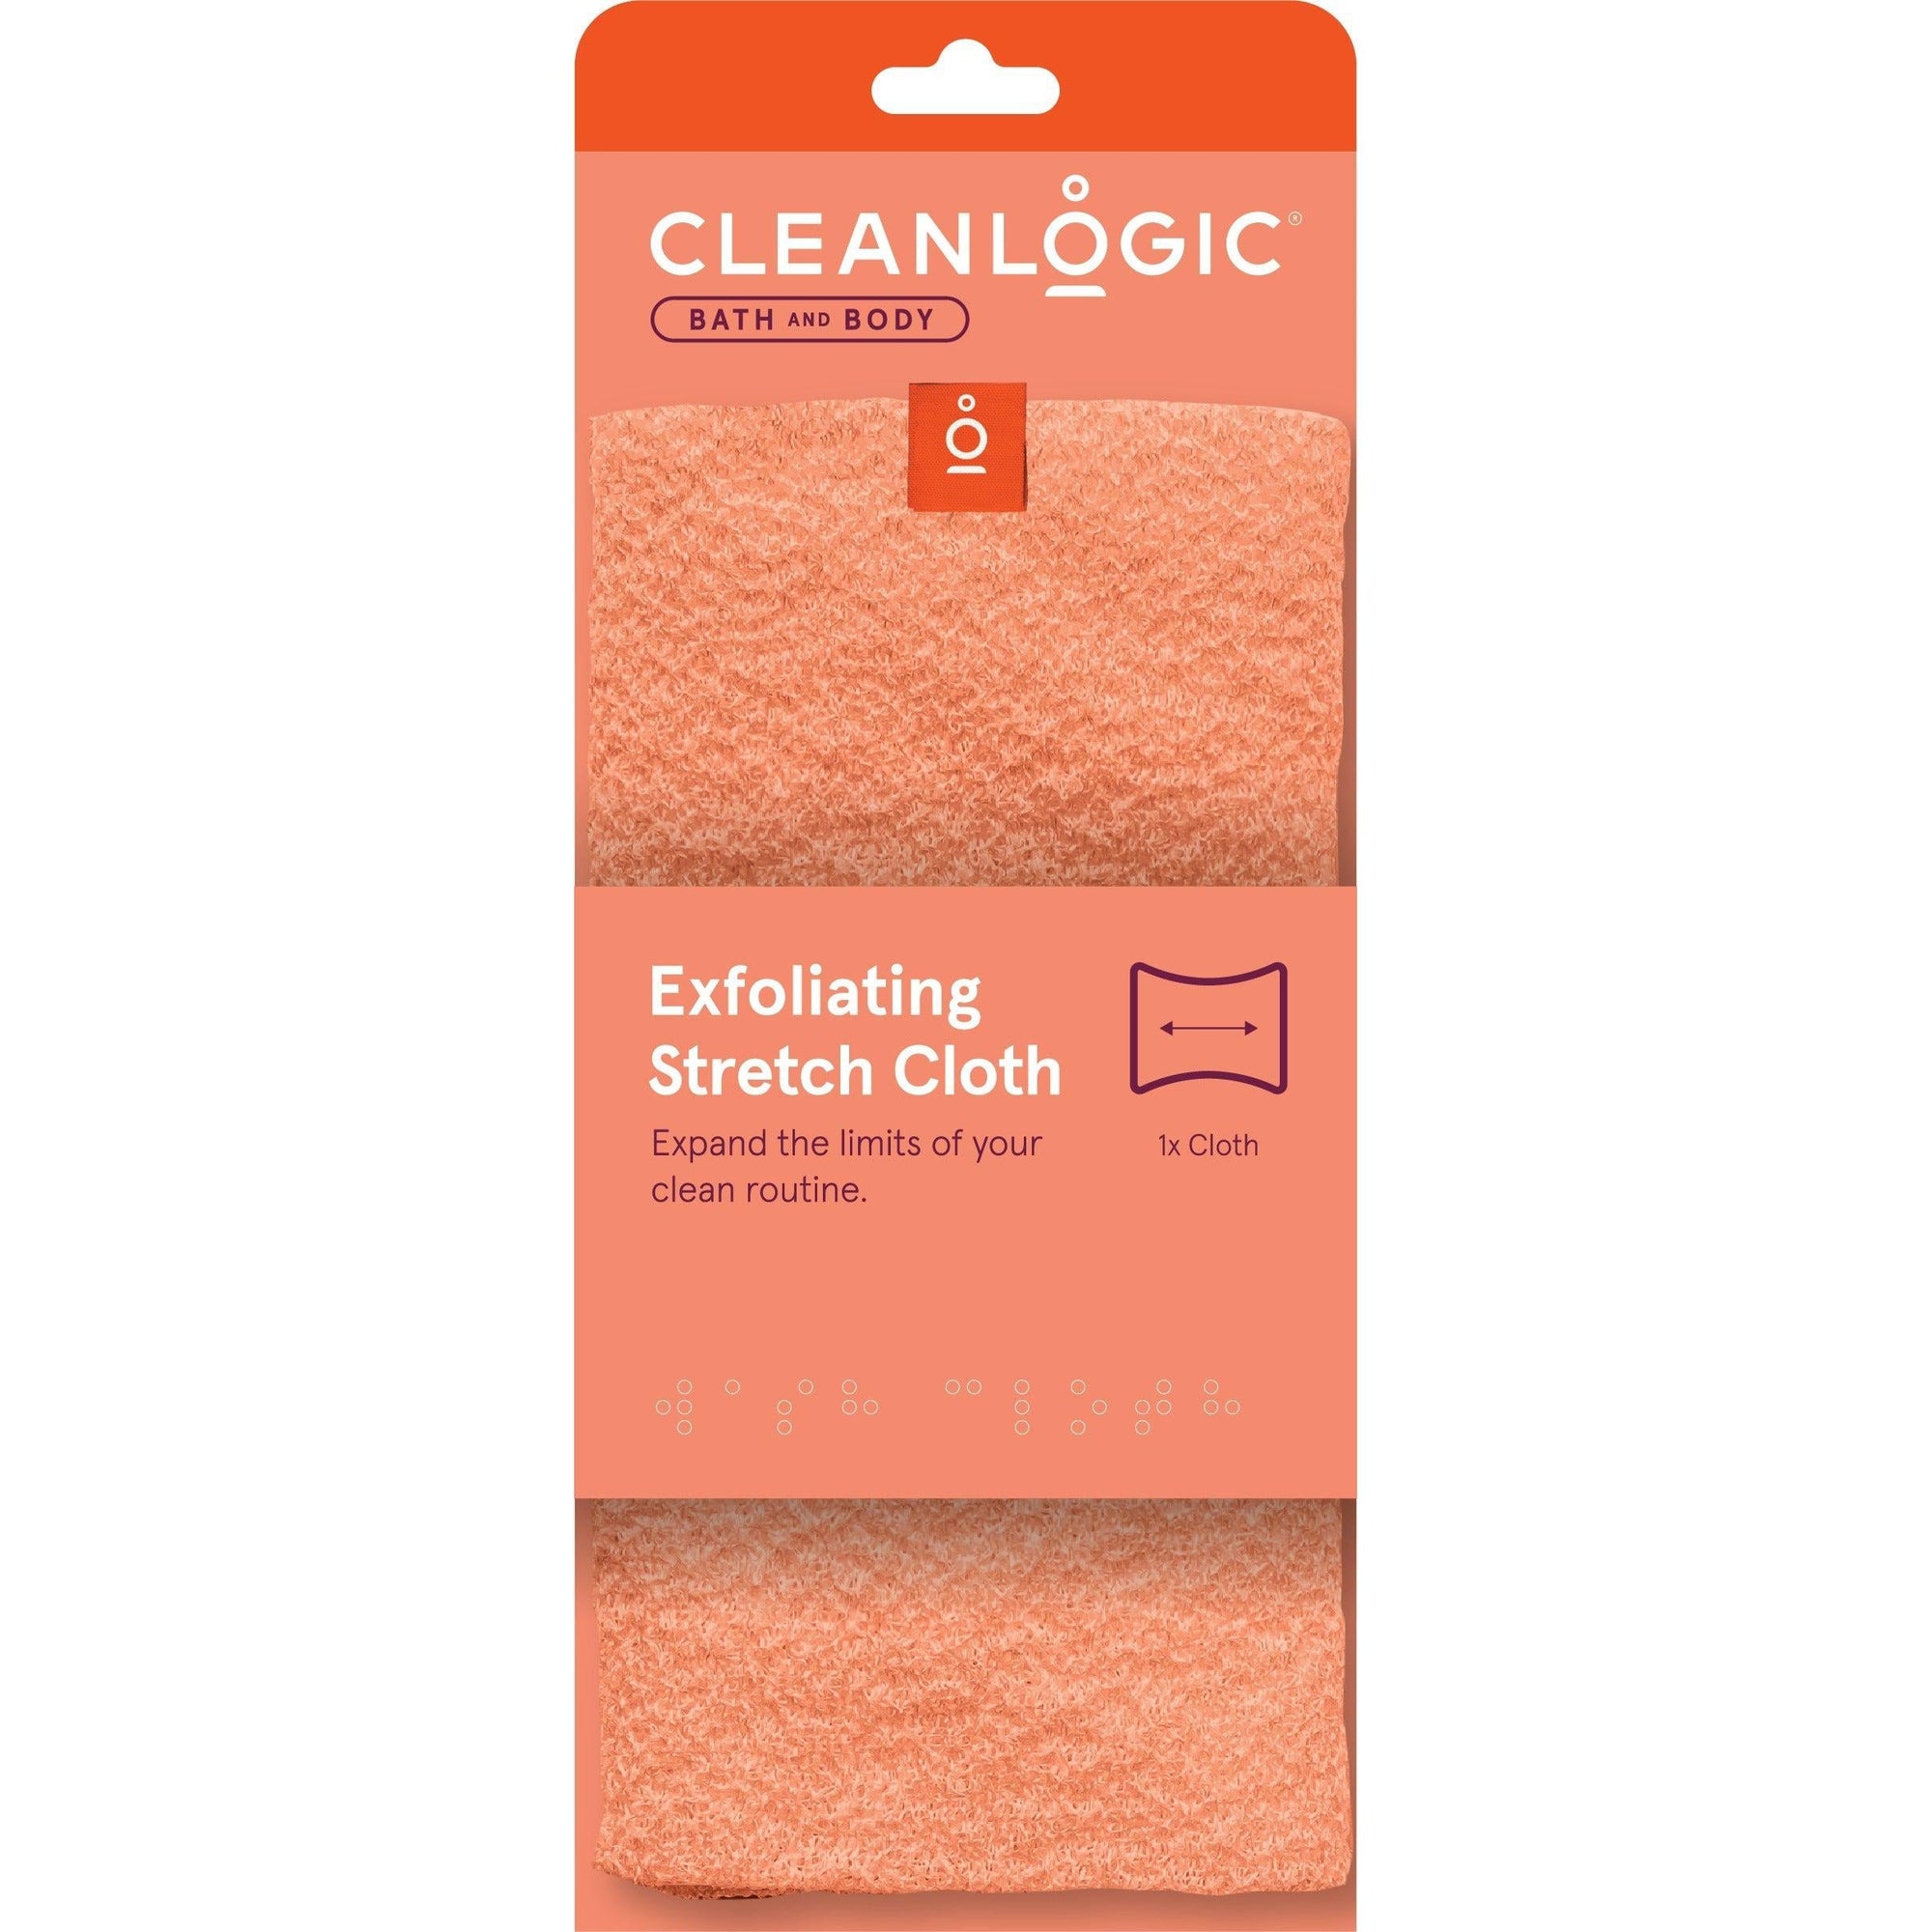 Cleanlogic Exfoliating Stretch Cloth